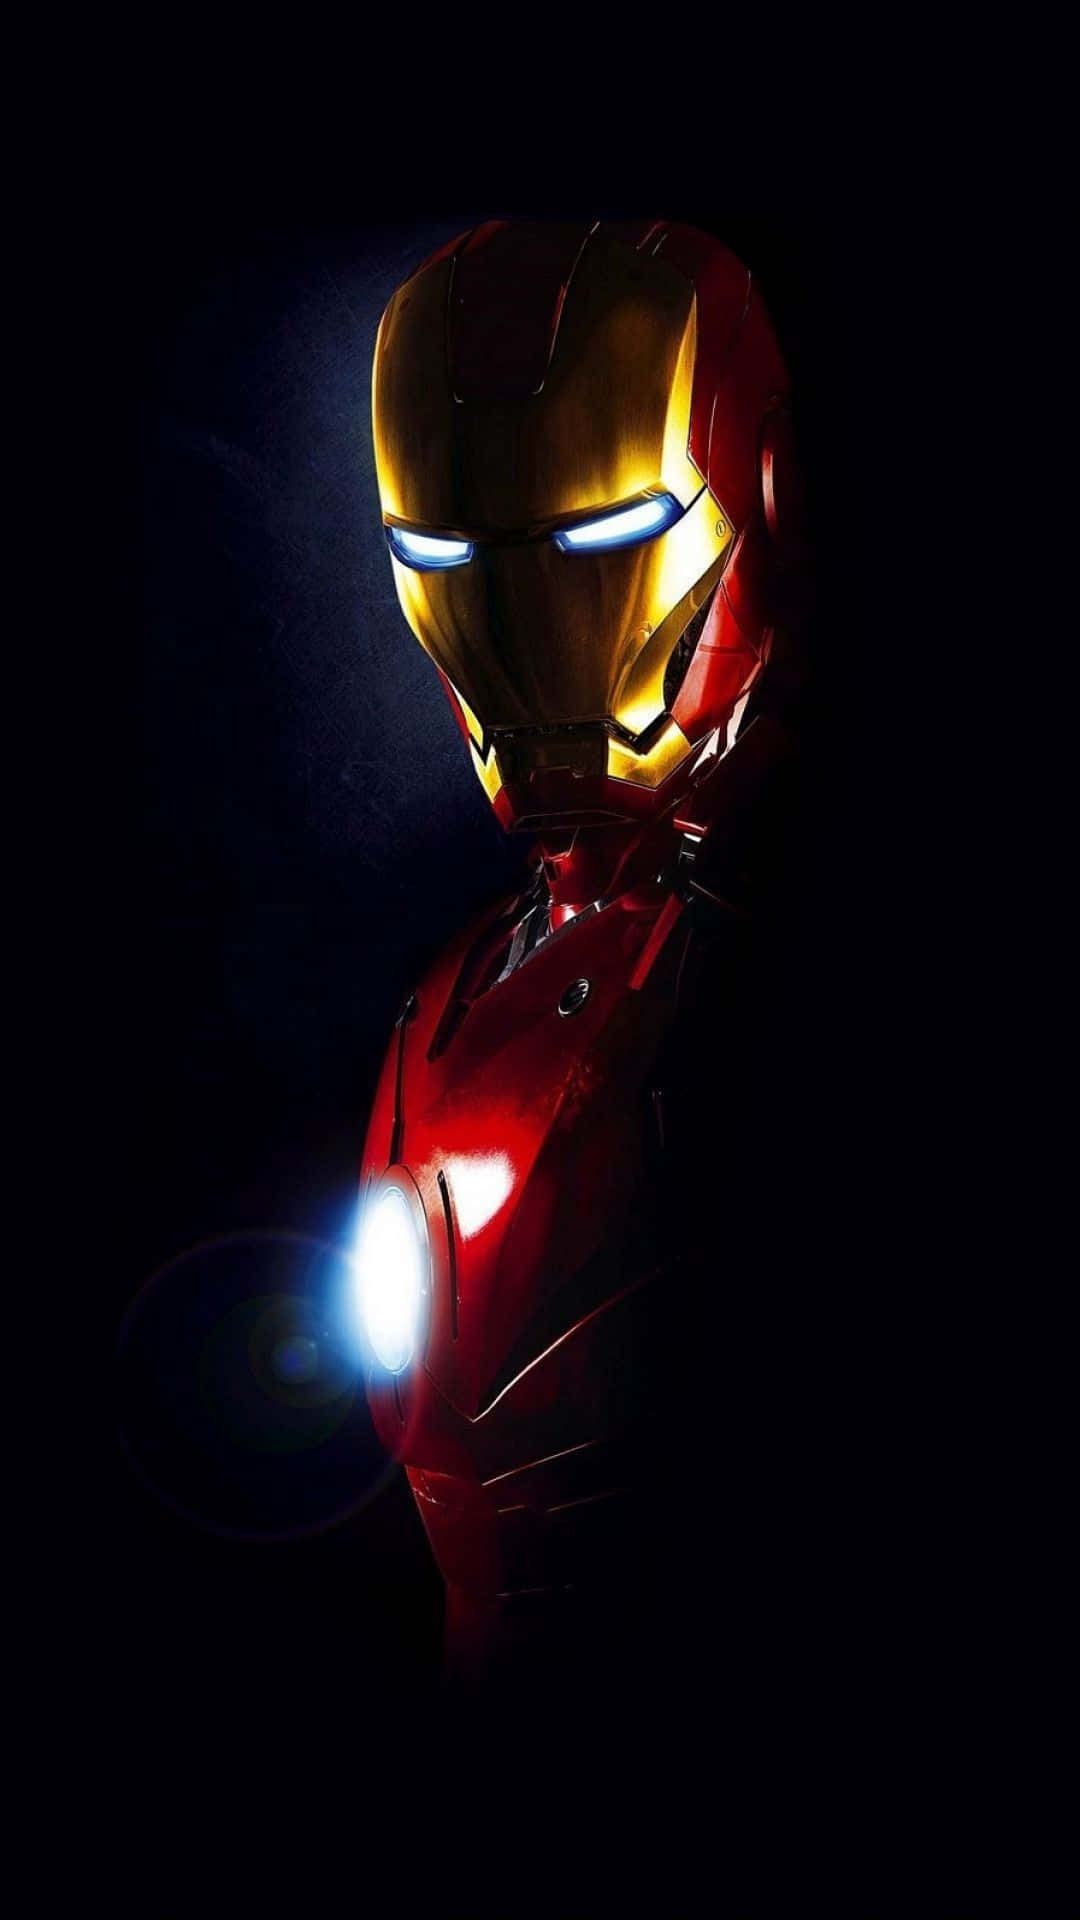 Preparatia Combattere Come Iron Man Con Il Tuo Iphone X Sfondo